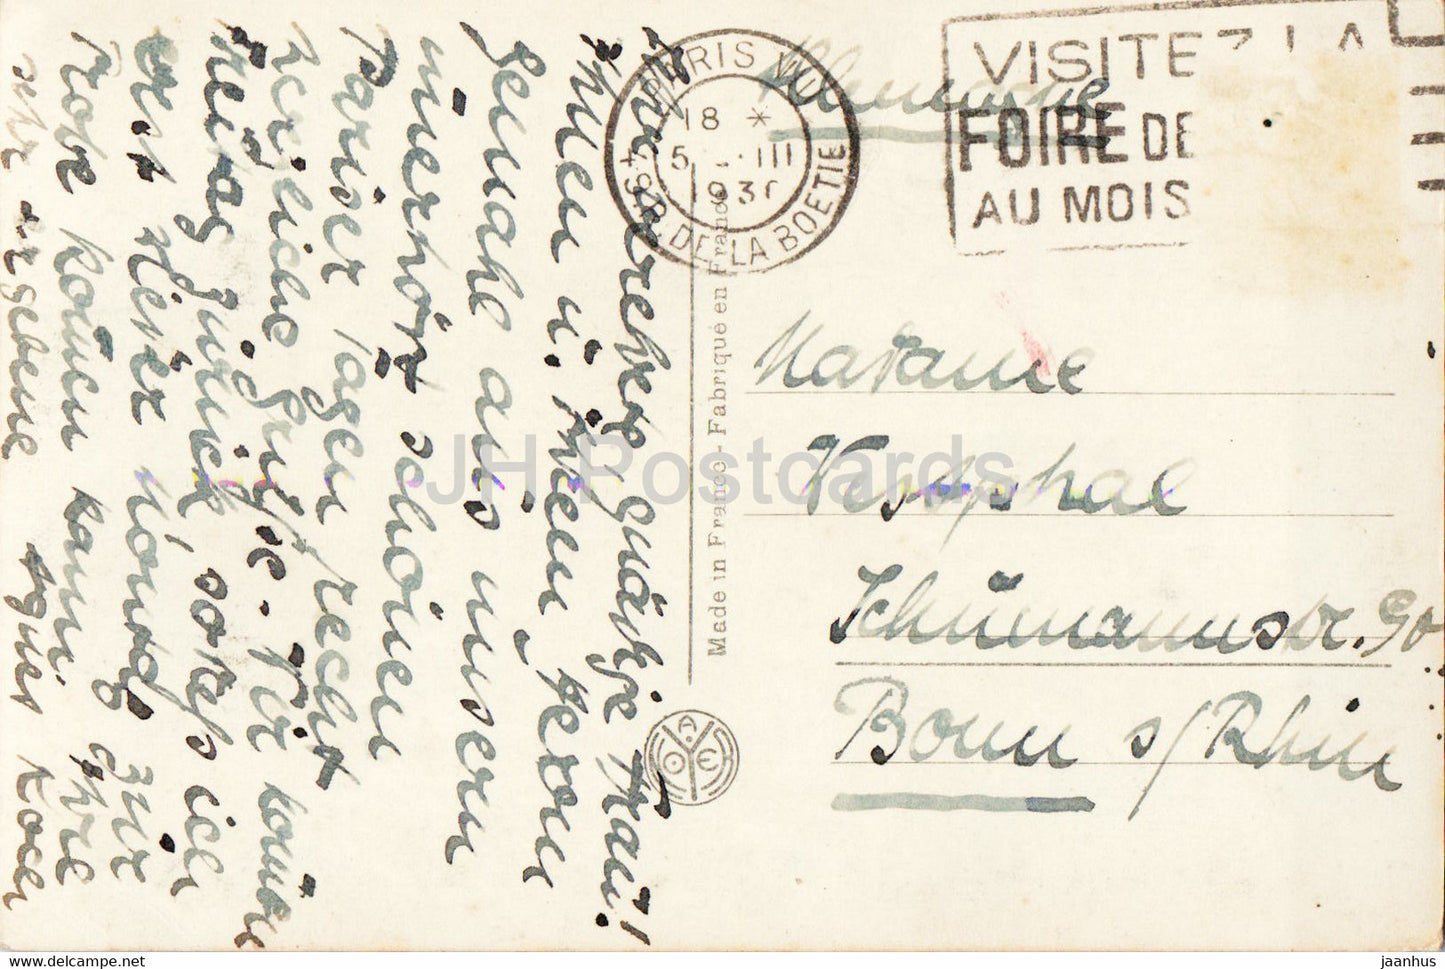 Paris - La Place de la Concorde et la Madeleine - 295 - alte Postkarte - 1930 - Frankreich - gebraucht